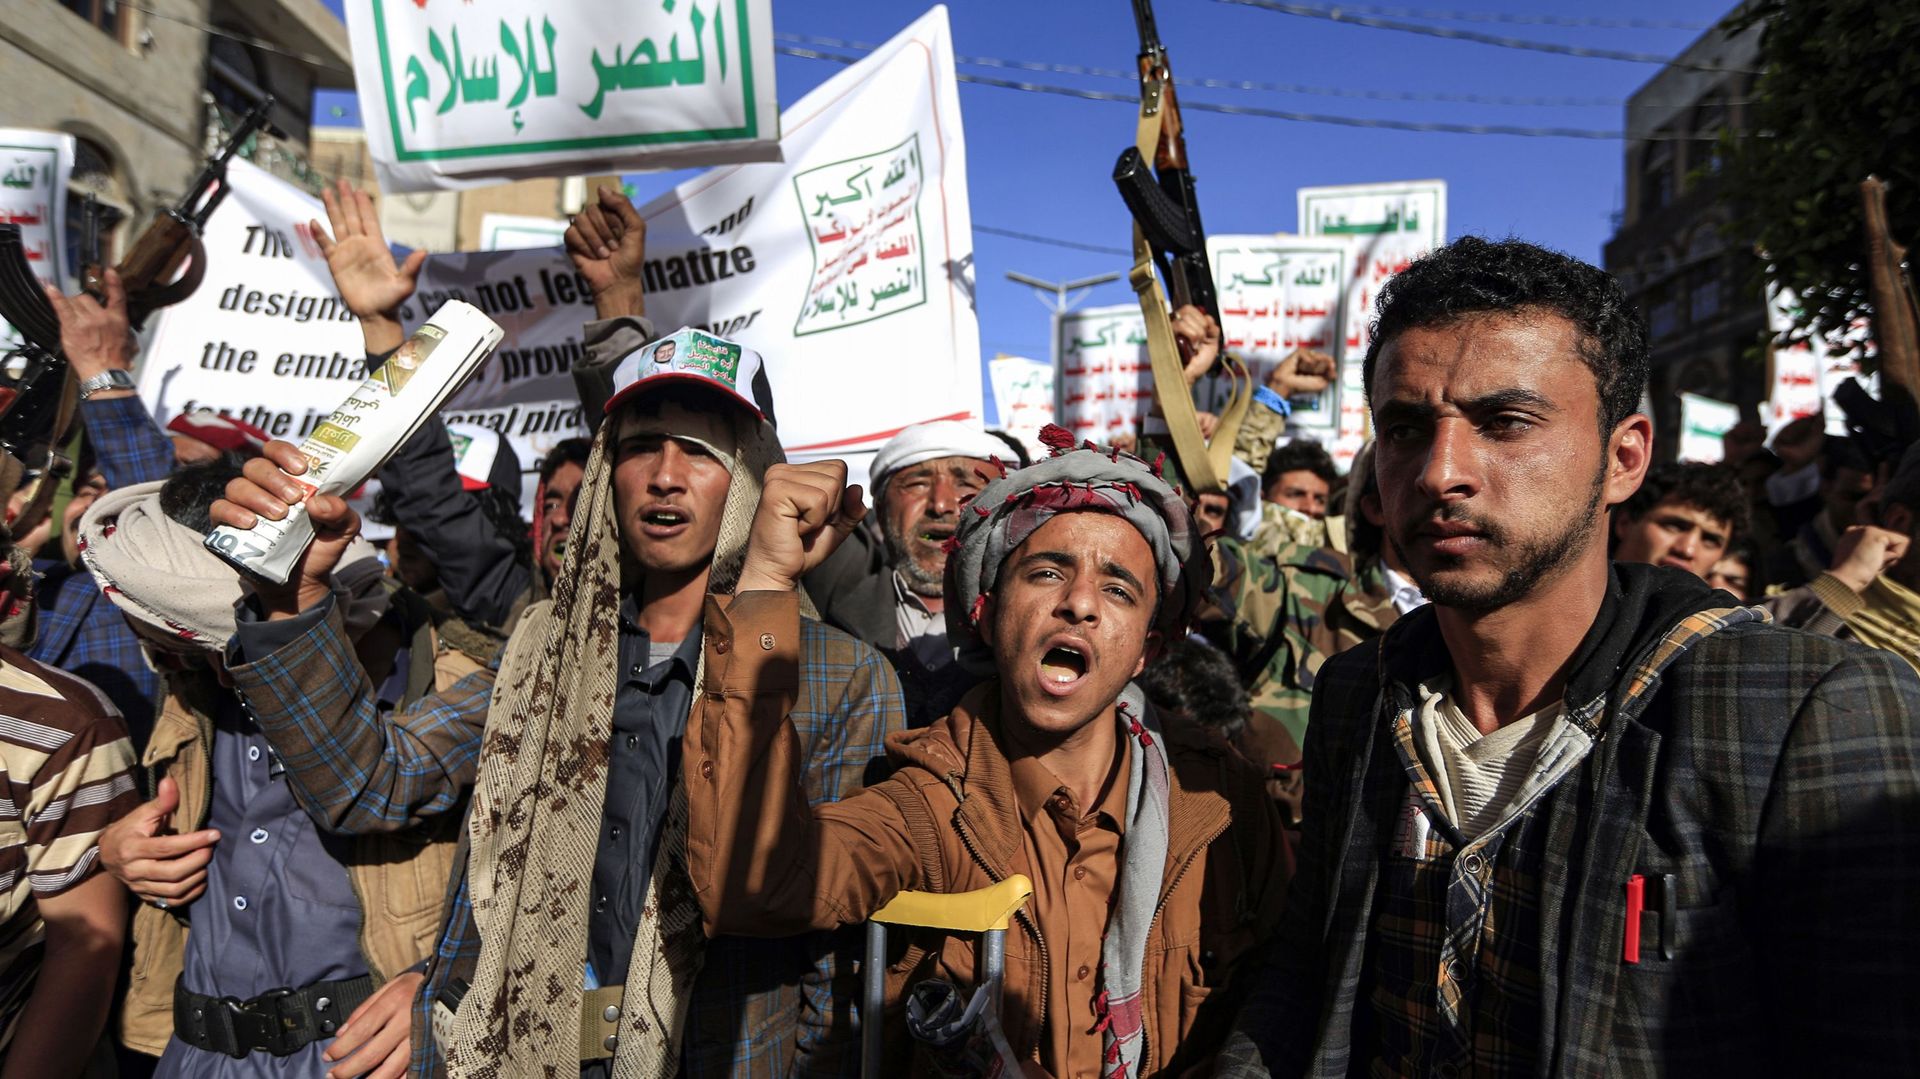 Les partisans des rebelles houthis assistent à un rassemblement dénonçant les États-Unis et la décision de l'administration Trump sortante d'appliquer la désignation "terroriste" au mouvement Houthies soutenu par l'Iran, Sanaa, le 25 janvier 2021.